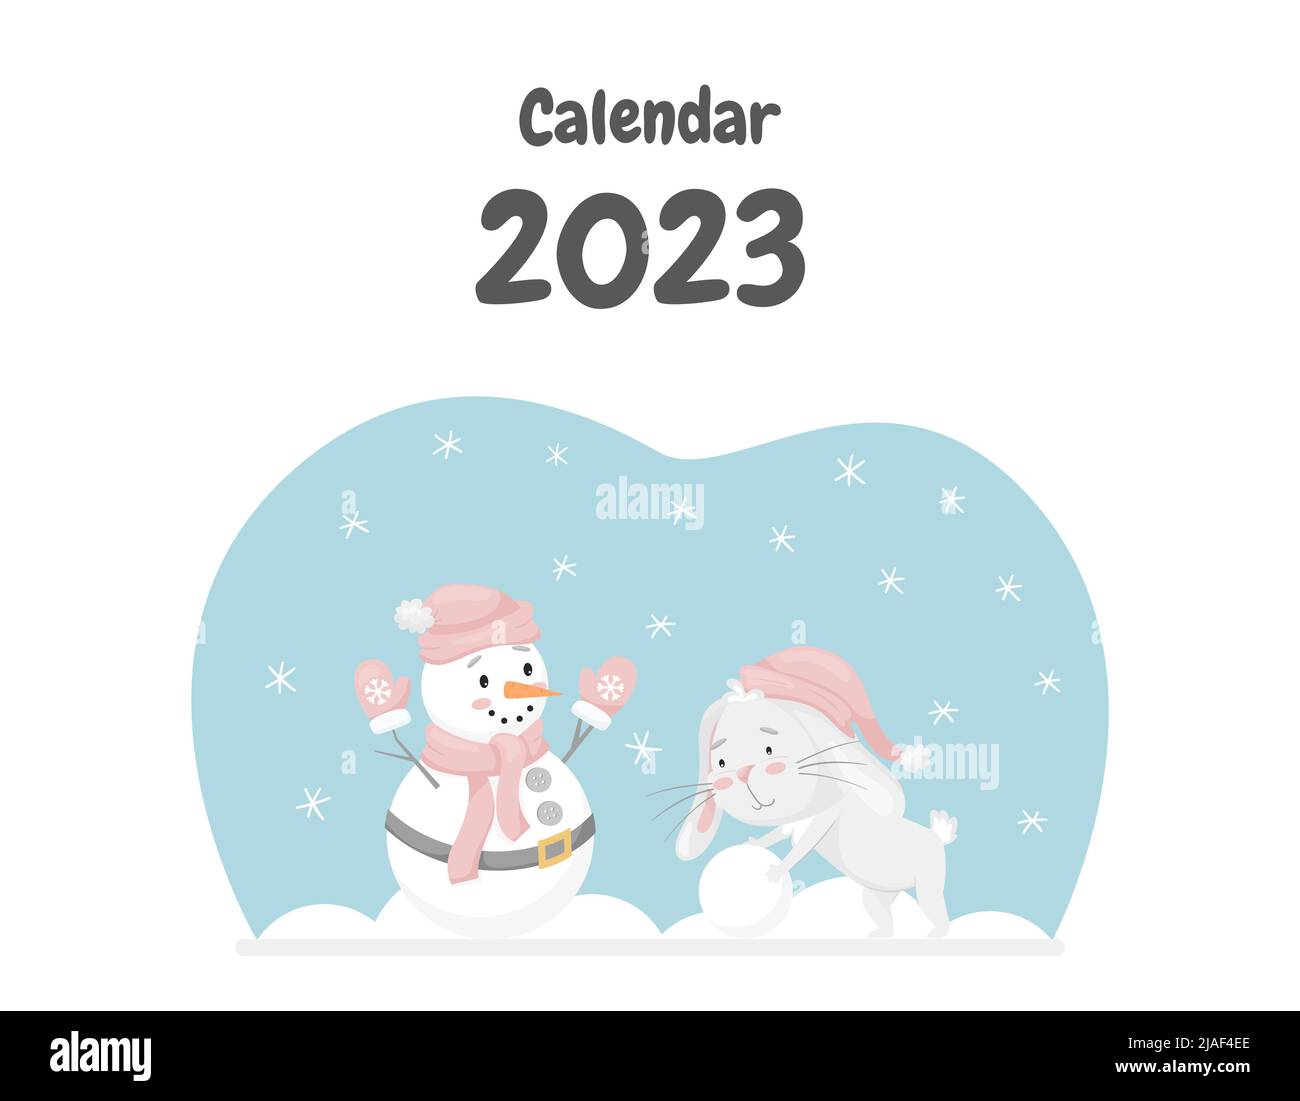 La copertina del calendario per il 2023 con un simpatico coniglio, il simbolo cinese dell'anno. Coniglio rotola una palla di neve, fa un pupazzo di neve. Attività di divertimento invernale. C Illustrazione Vettoriale